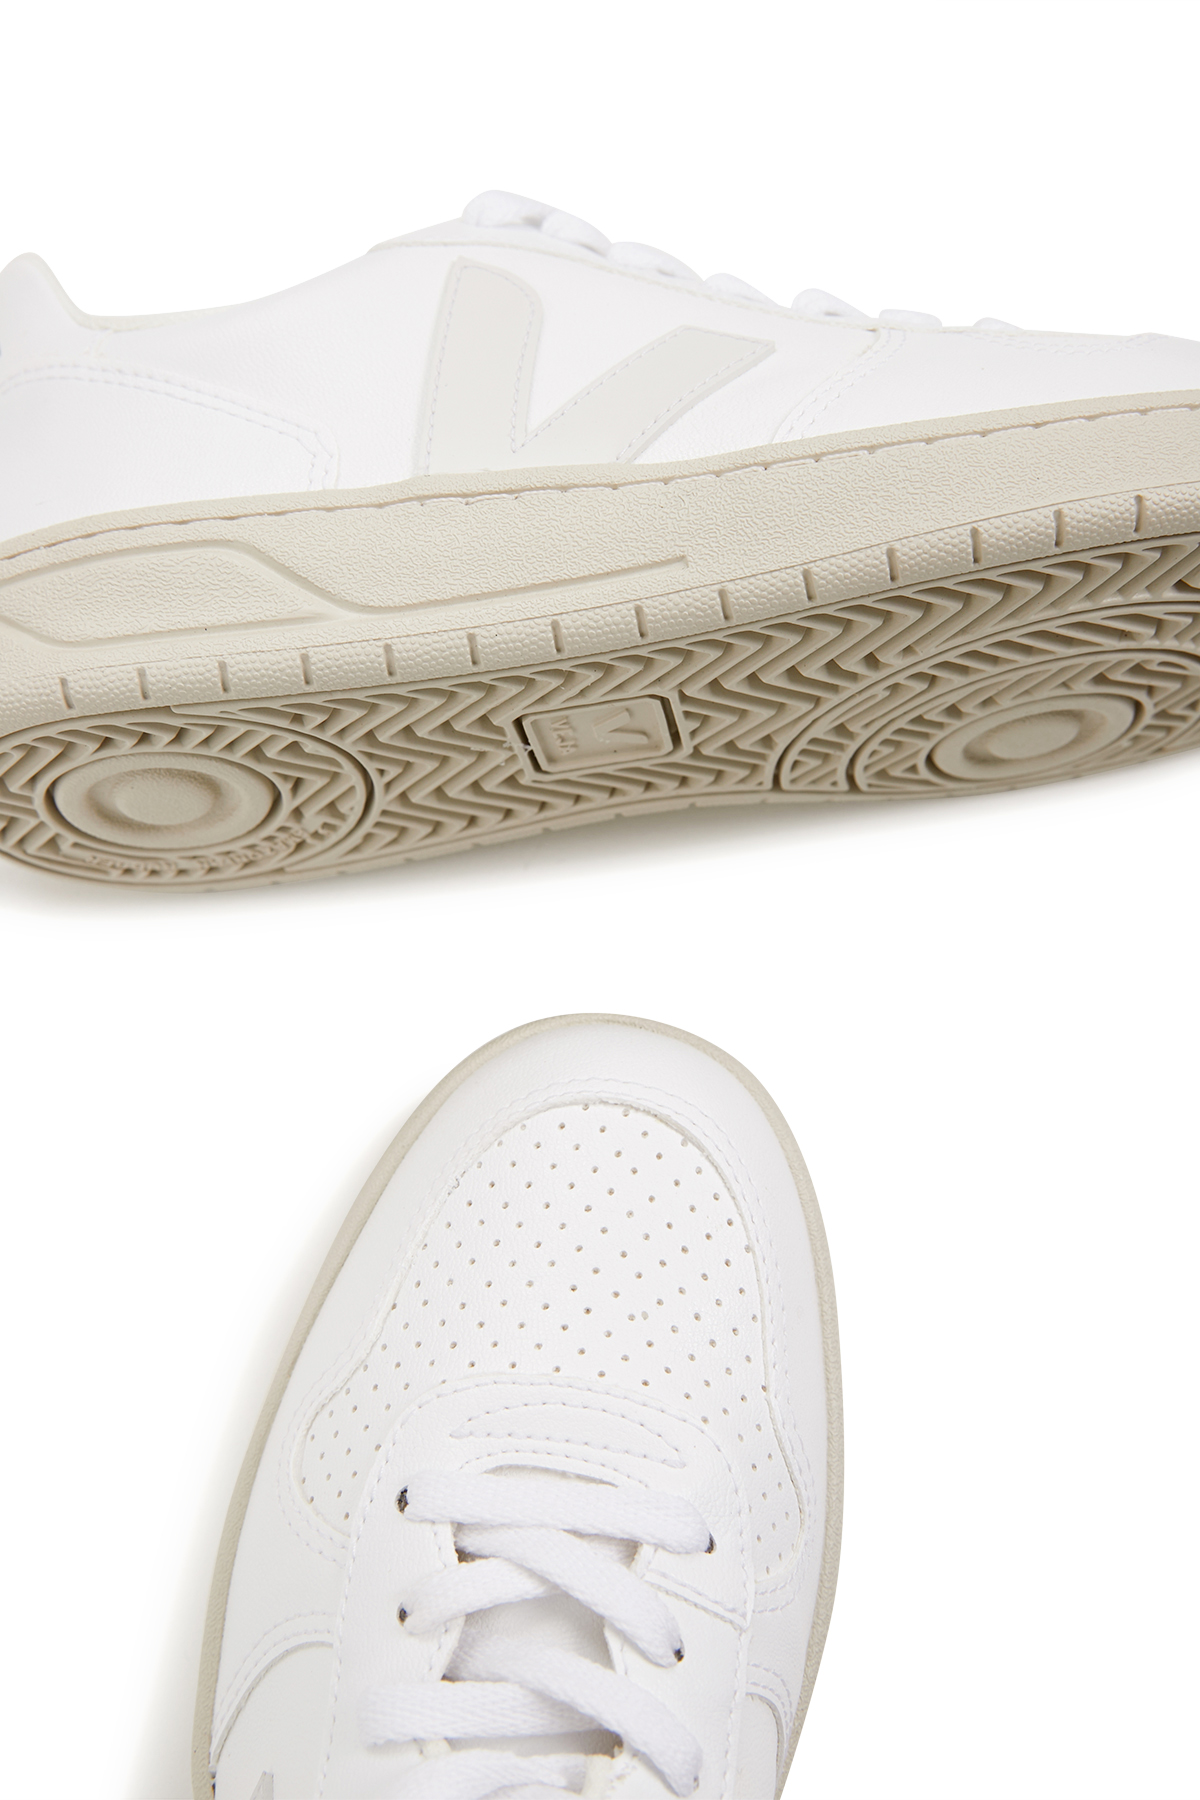 Sneaker V-10 CWL Full White